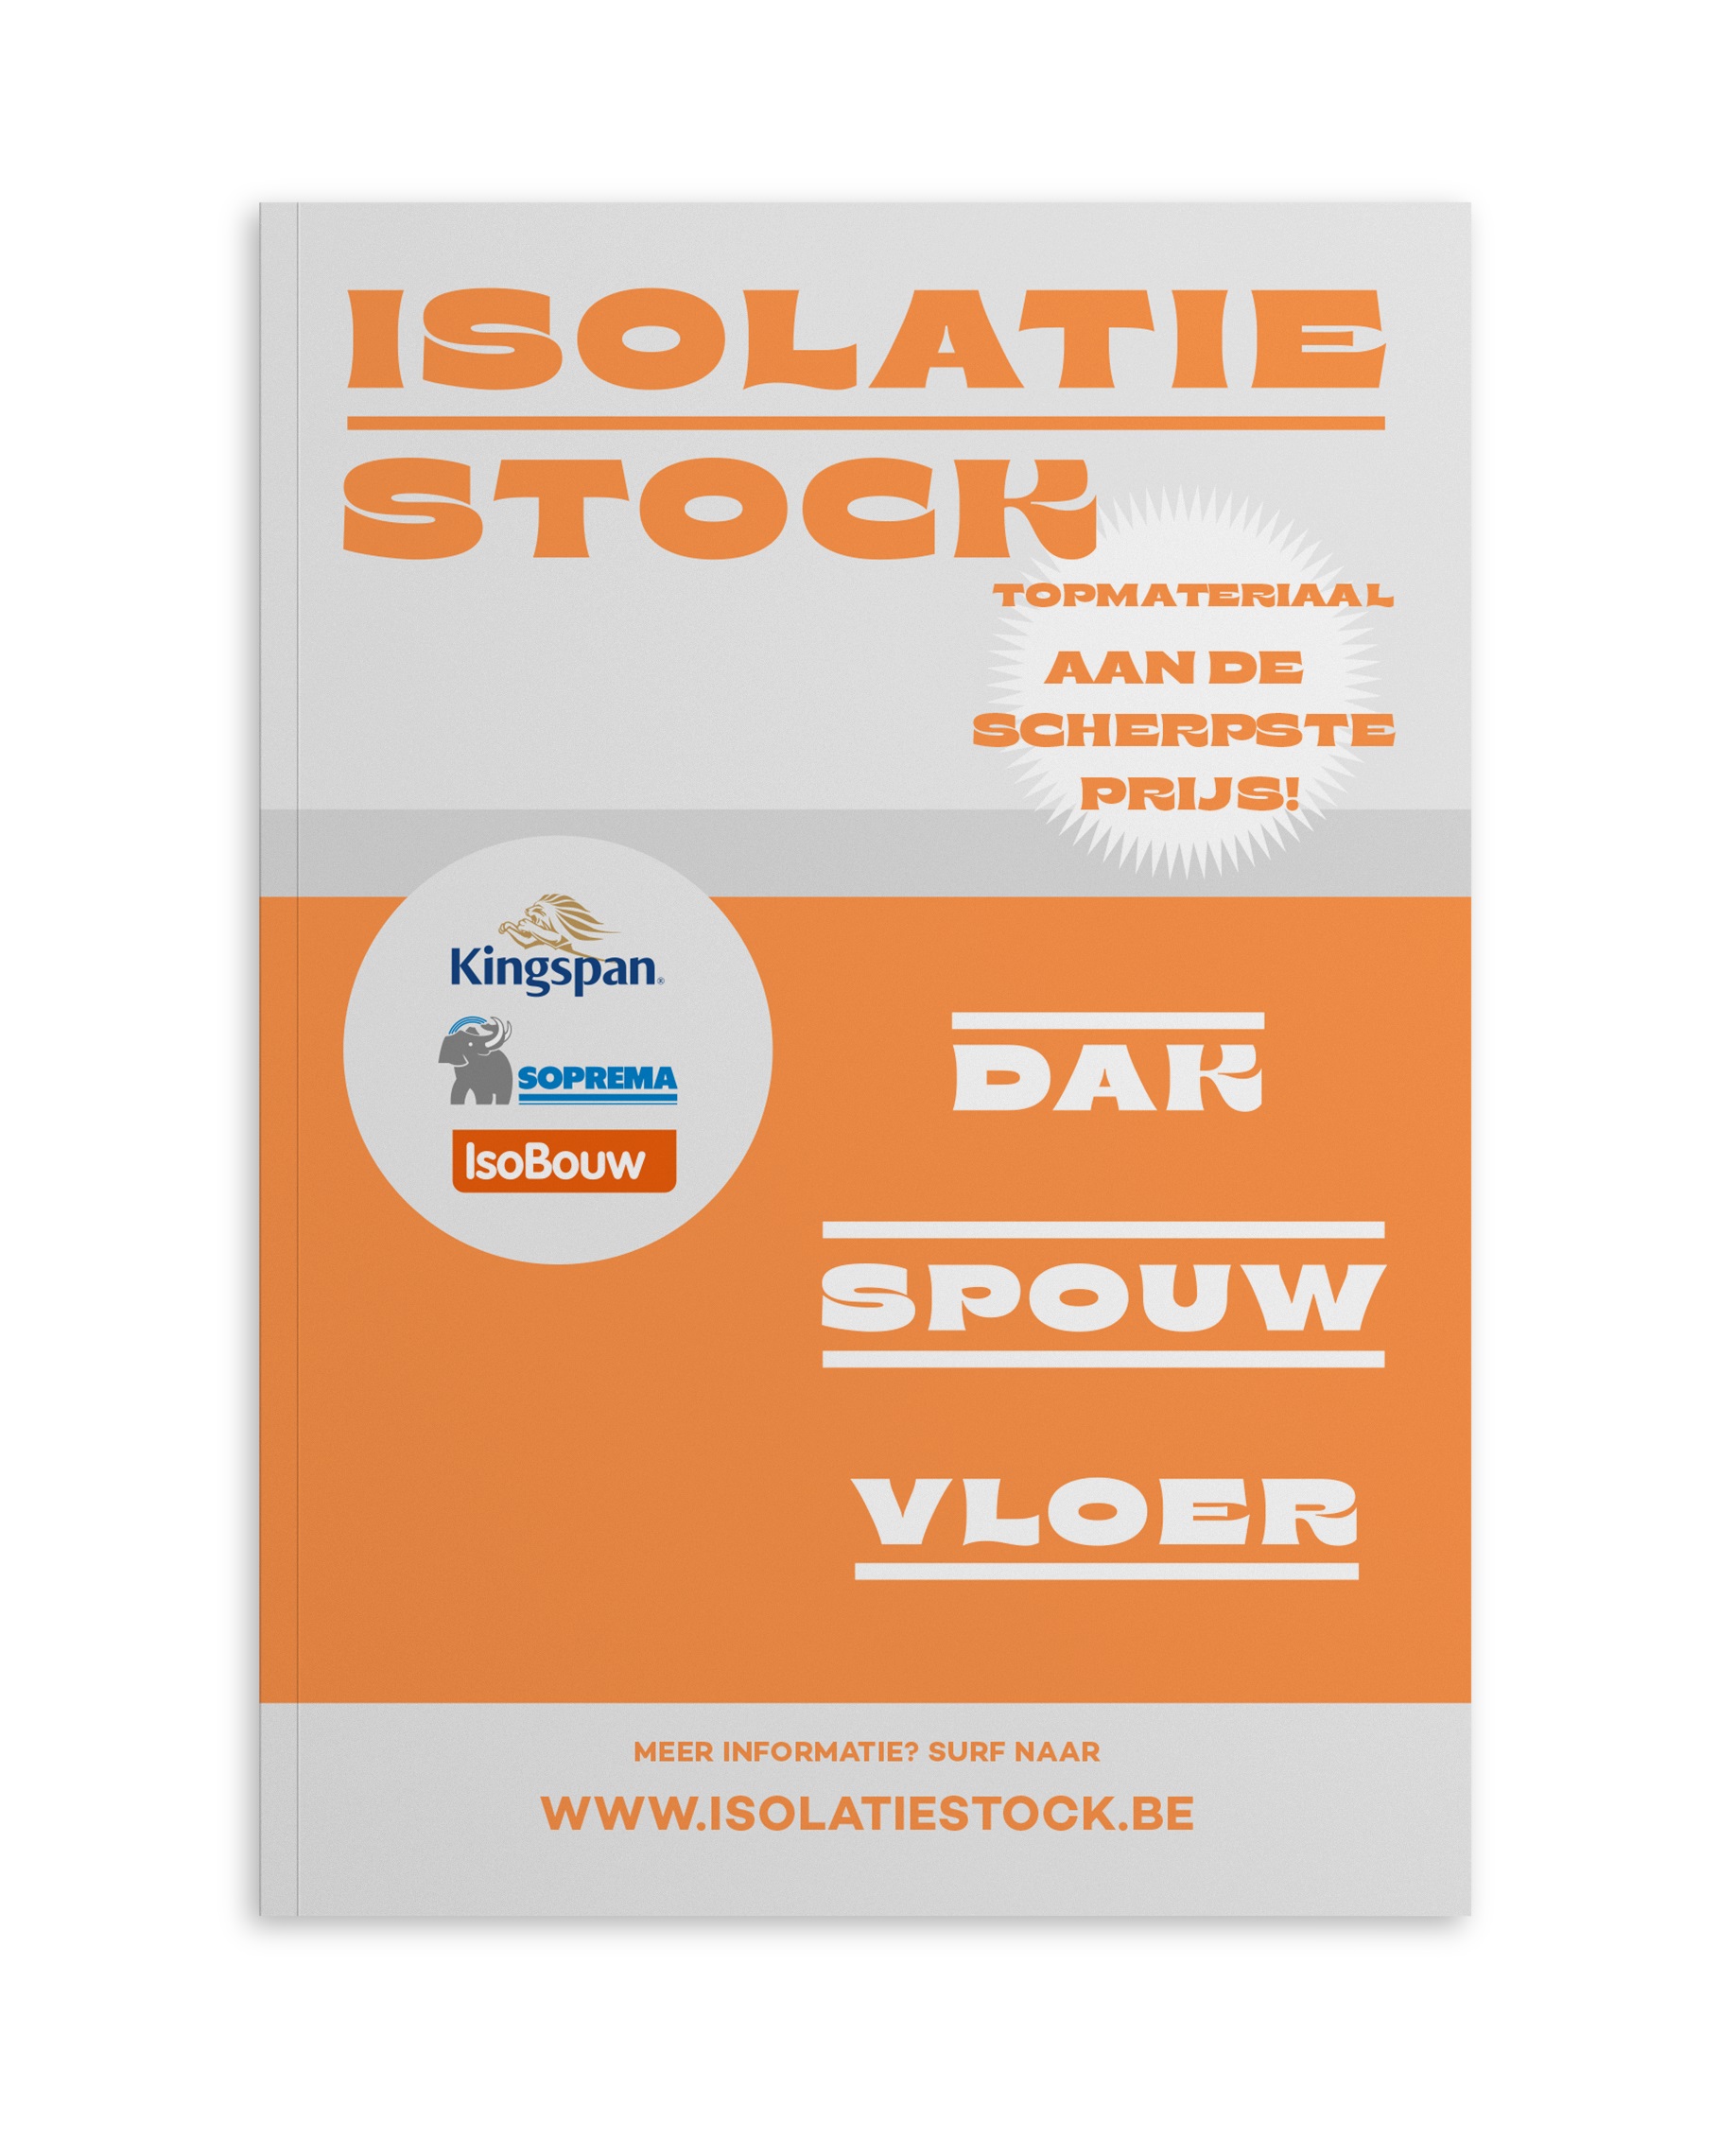 Isolatiestock | Topmateriaal aan de scherpste prijs